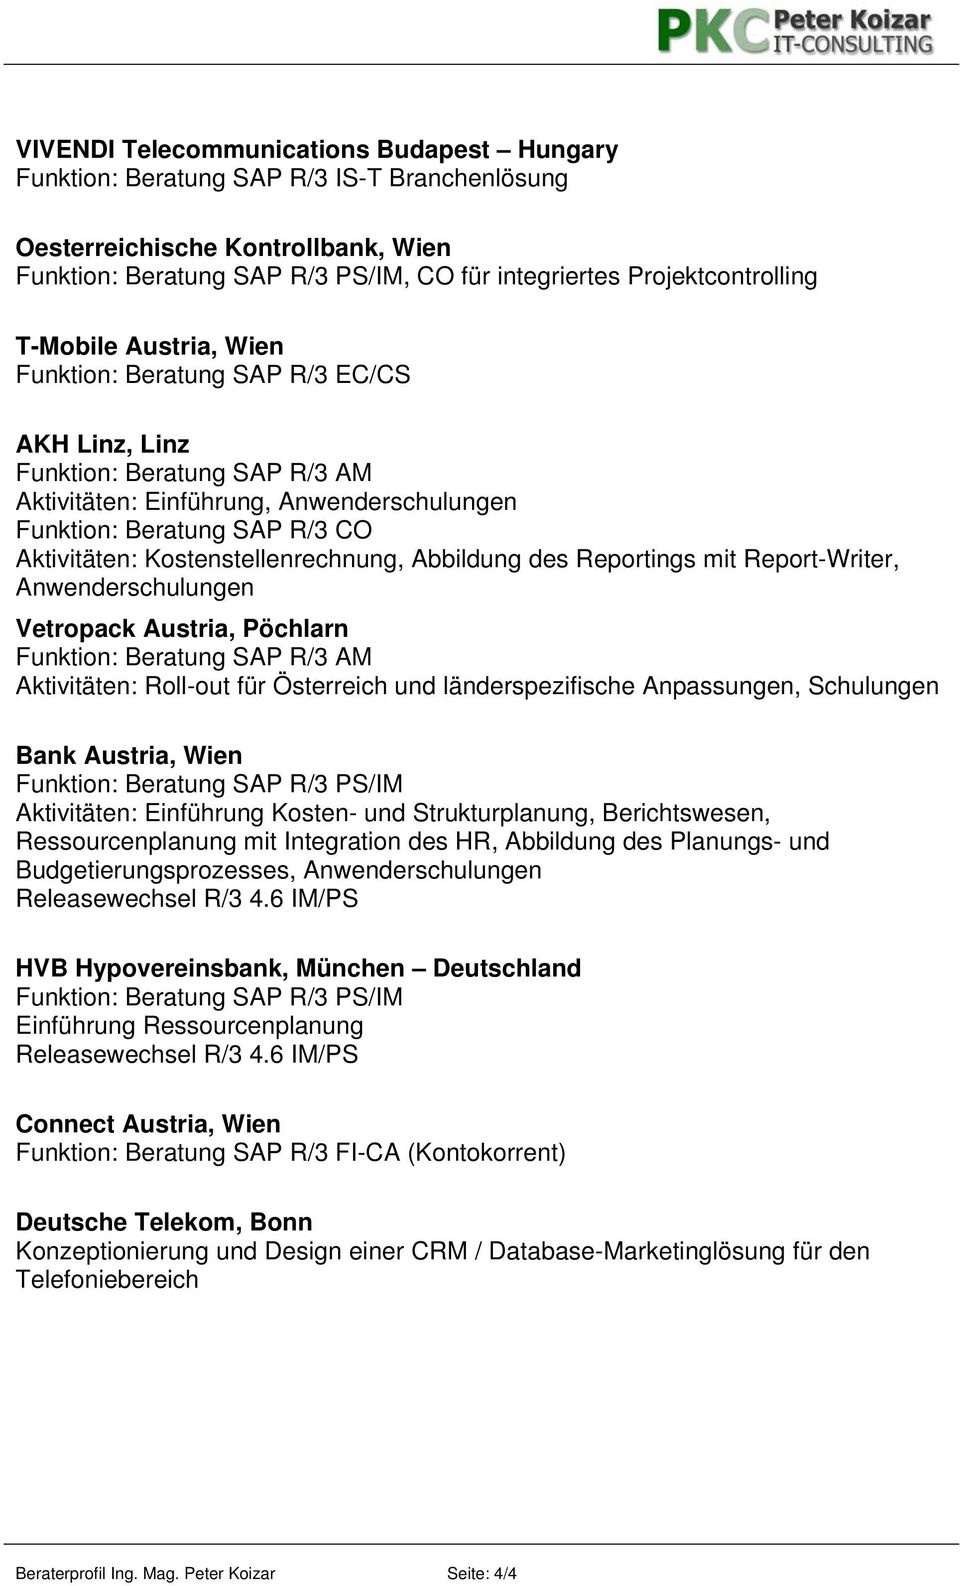 Report-Writer, Anwenderschulungen Vetropack Austria, Pöchlarn Funktion: Beratung SAP R/3 AM Aktivitäten: Roll-out für Österreich und länderspezifische Anpassungen, Schulungen Bank Austria, Wien